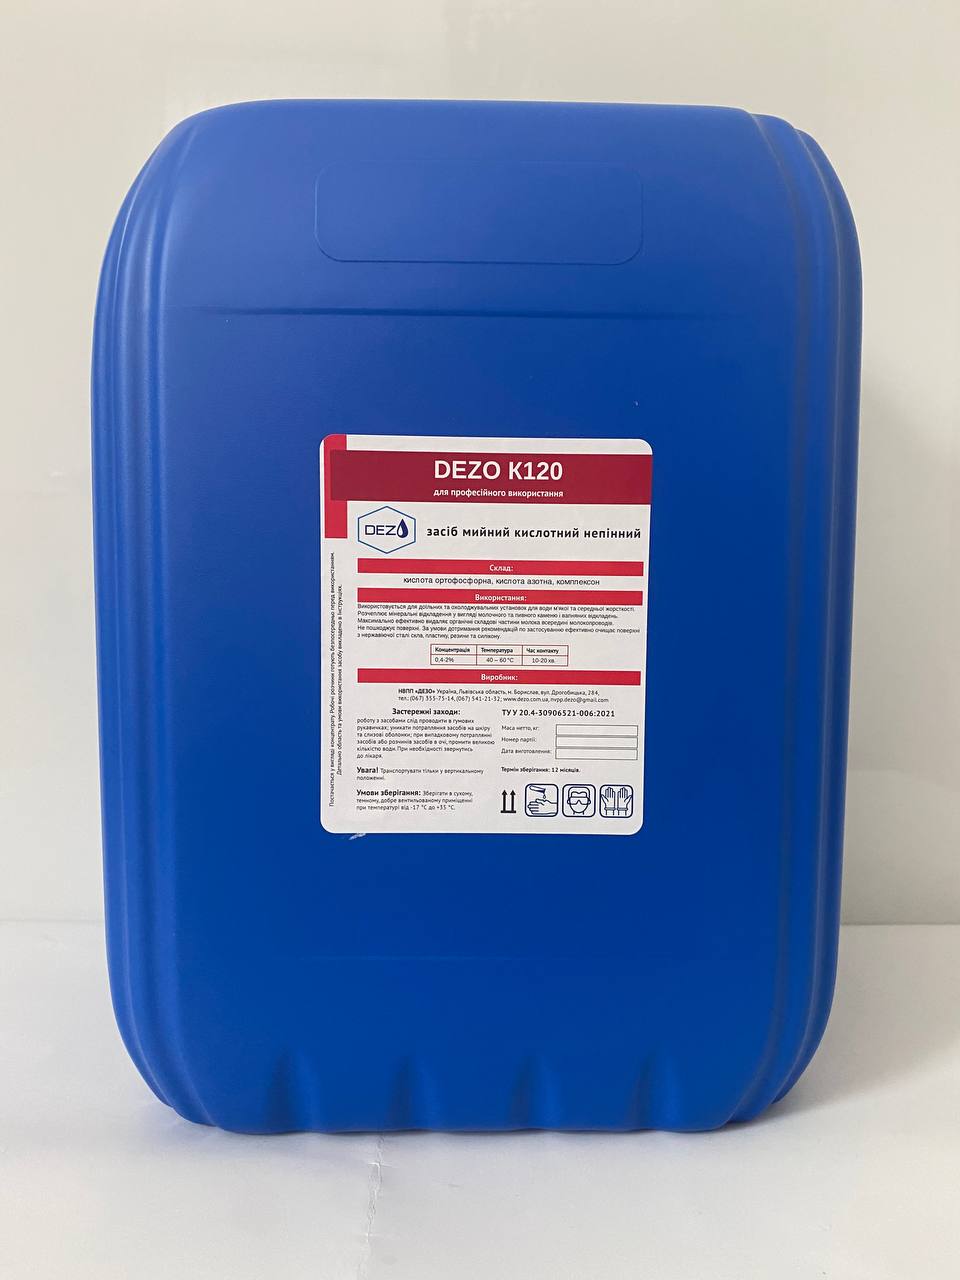 Засіб мийний кислотний непінний DEZO К120, 24 кг